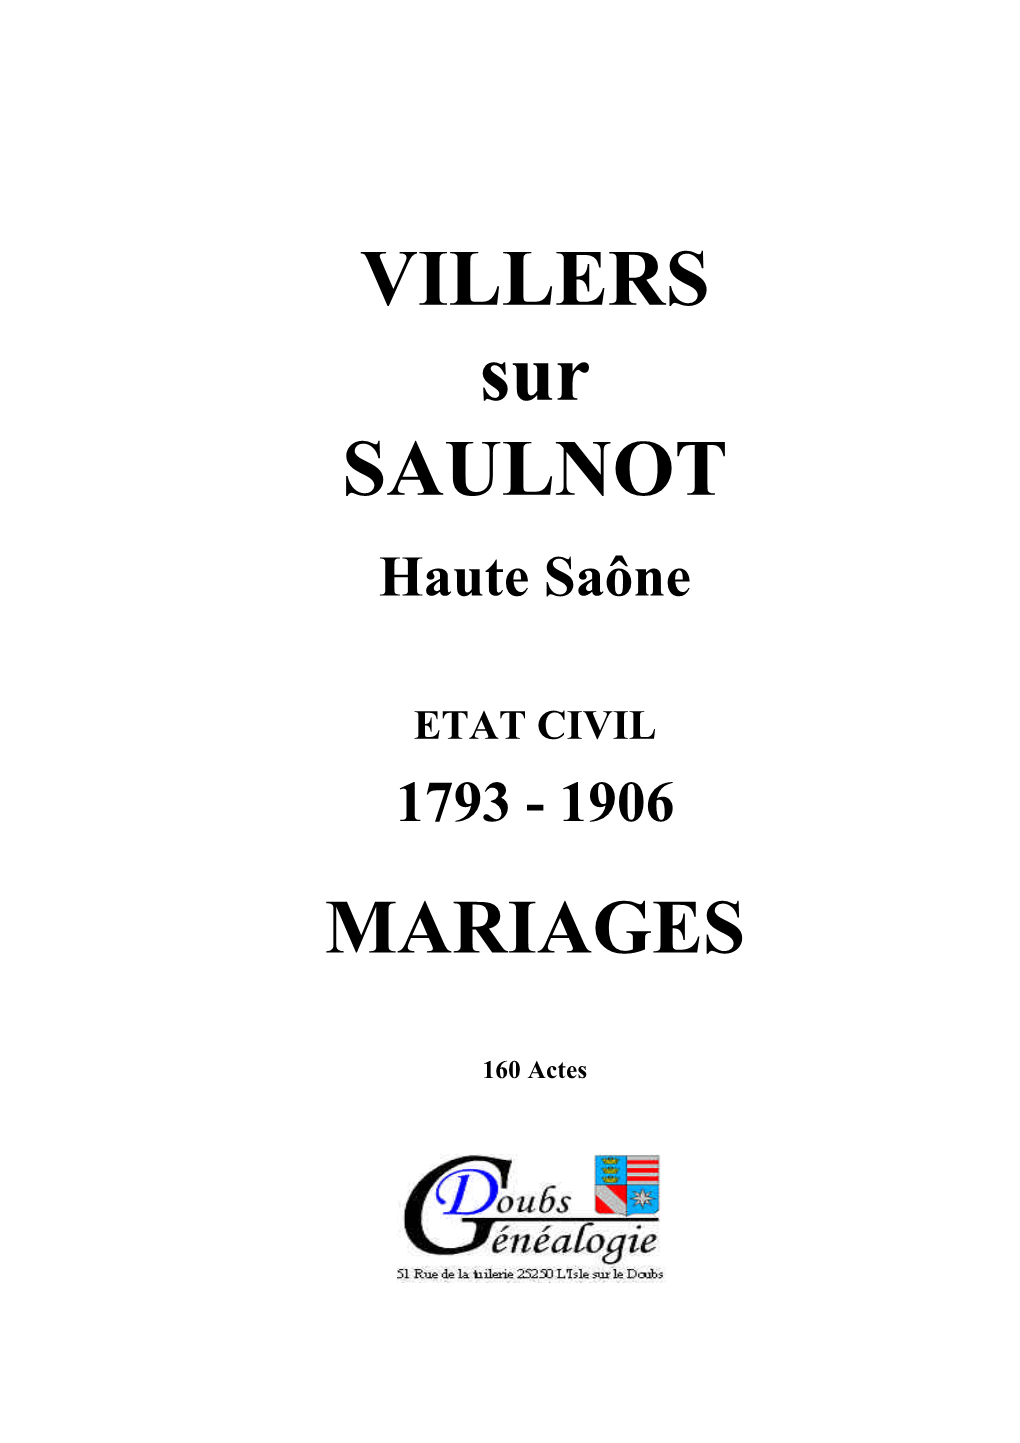 VILLERS Sur SAULNOT Haute Saône